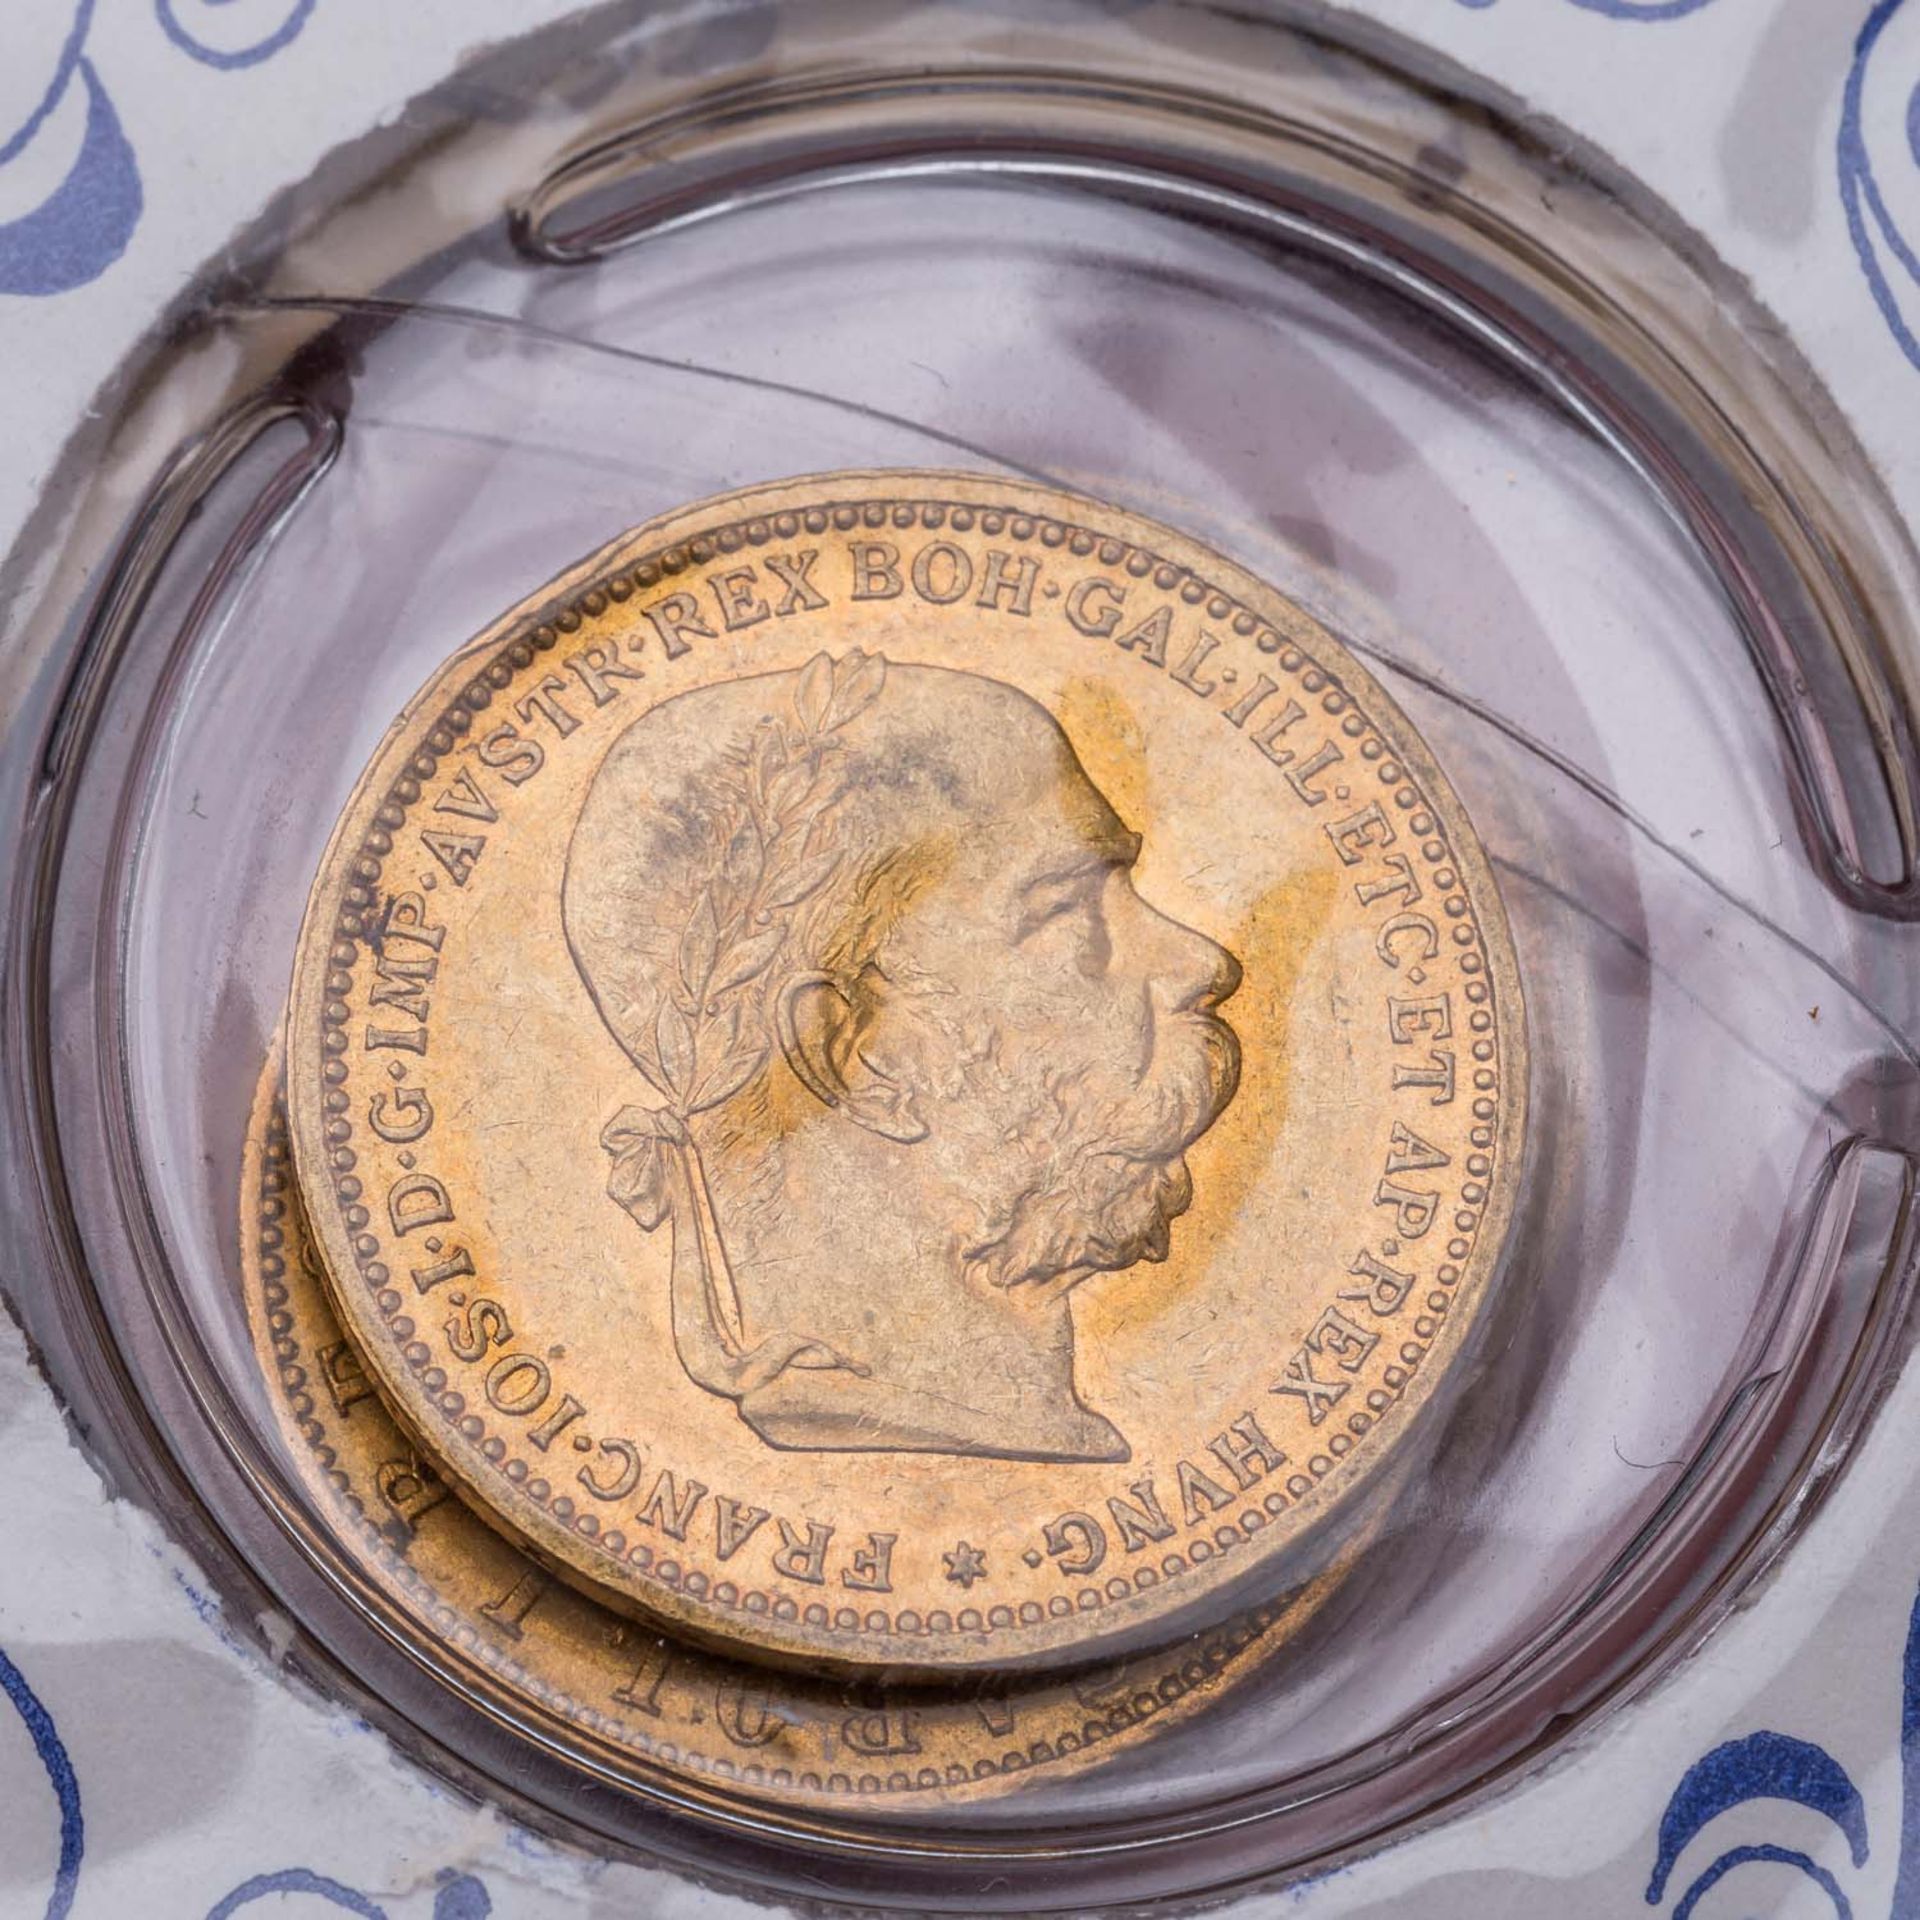 GOLD - Goldmünzen aus Europa und Nordamerika in 3 Alben. 49 Stück. - Image 4 of 9